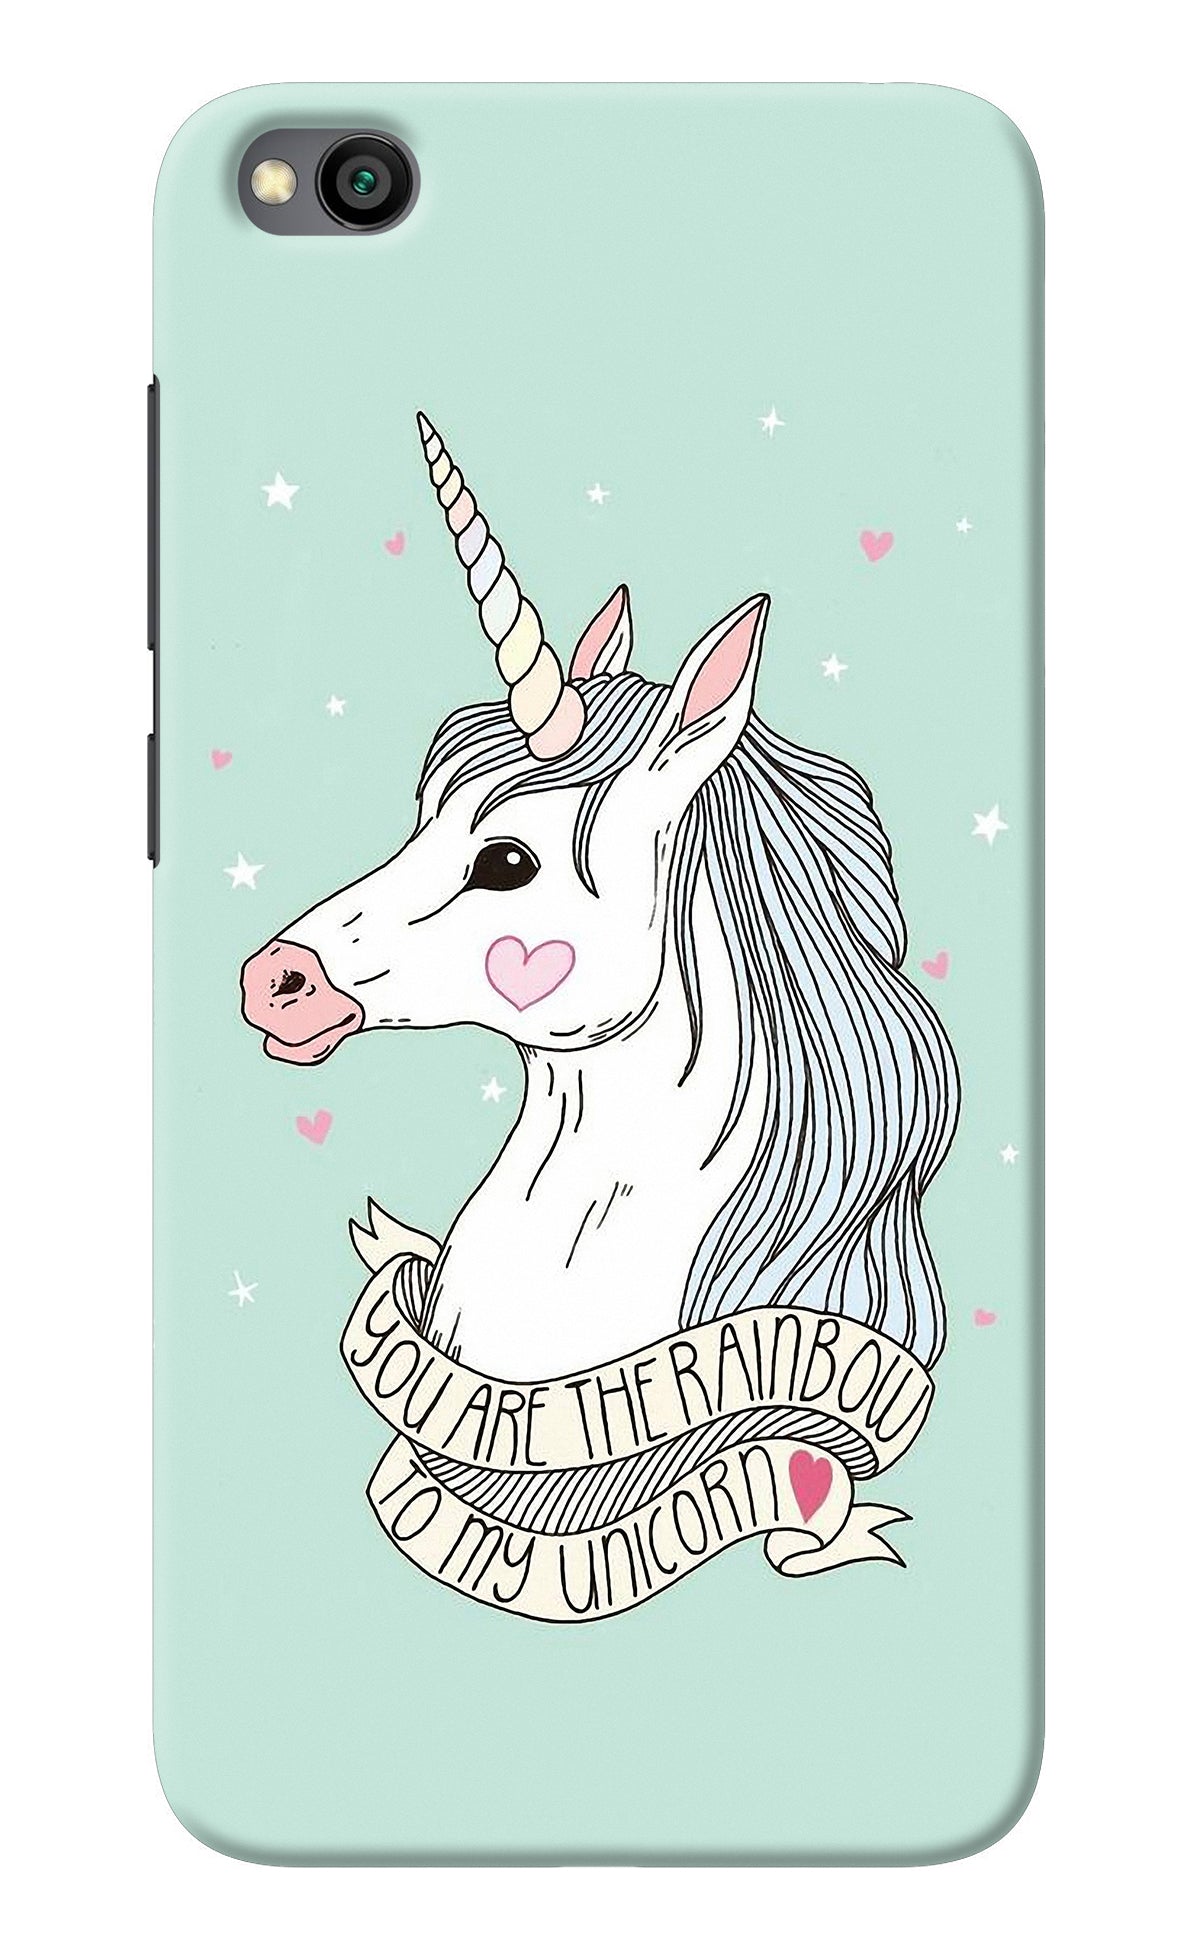 Unicorn Wallpaper Redmi Go Back Cover